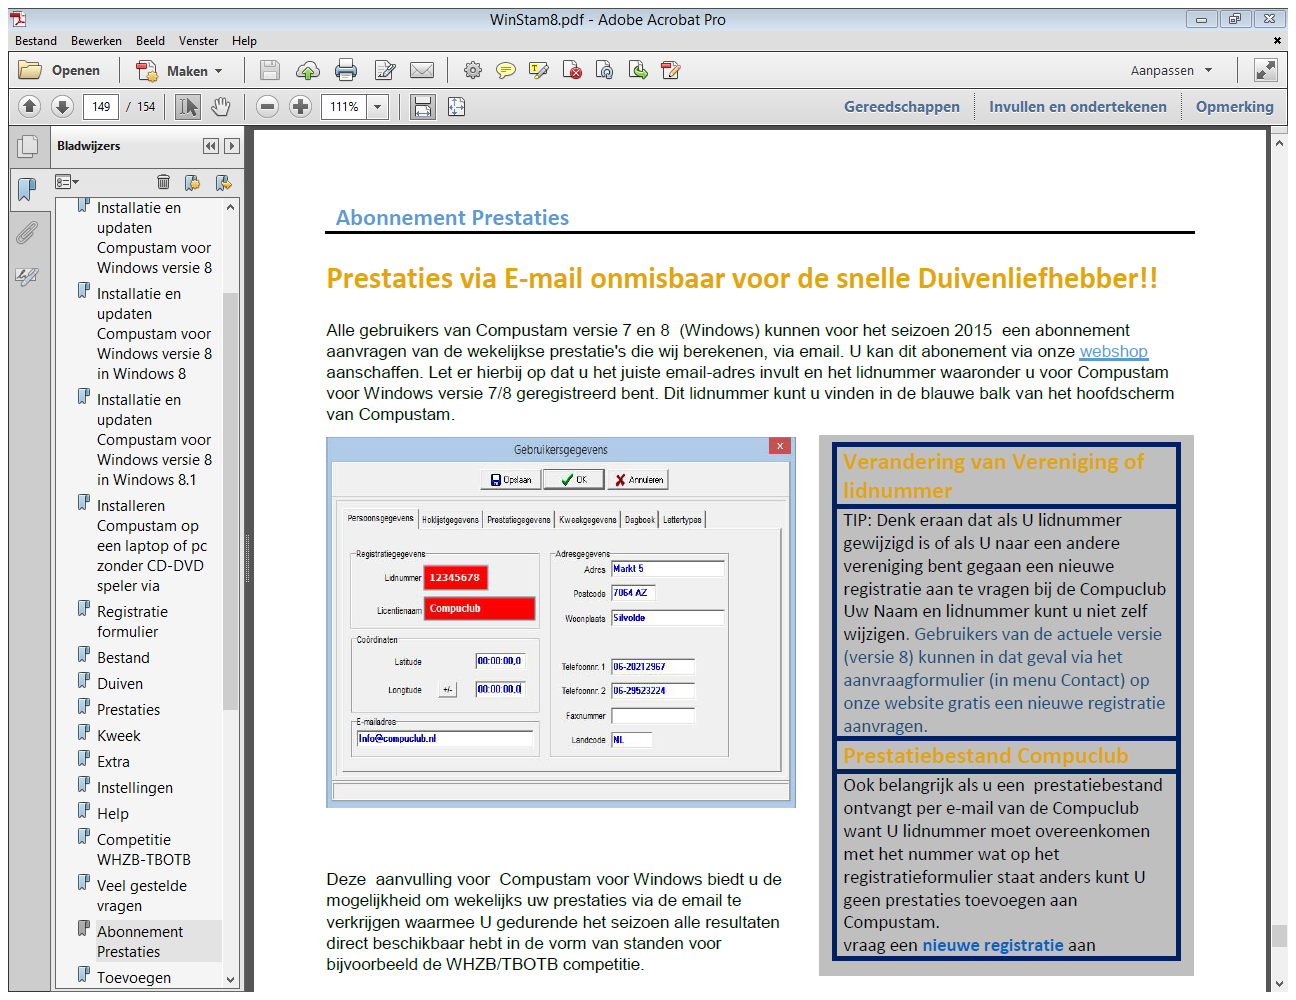 Hoe lees ik een prestatiebestand in van Compuclub Op de handleidingen Website staan diverse PDF bestanden waaronder PD.